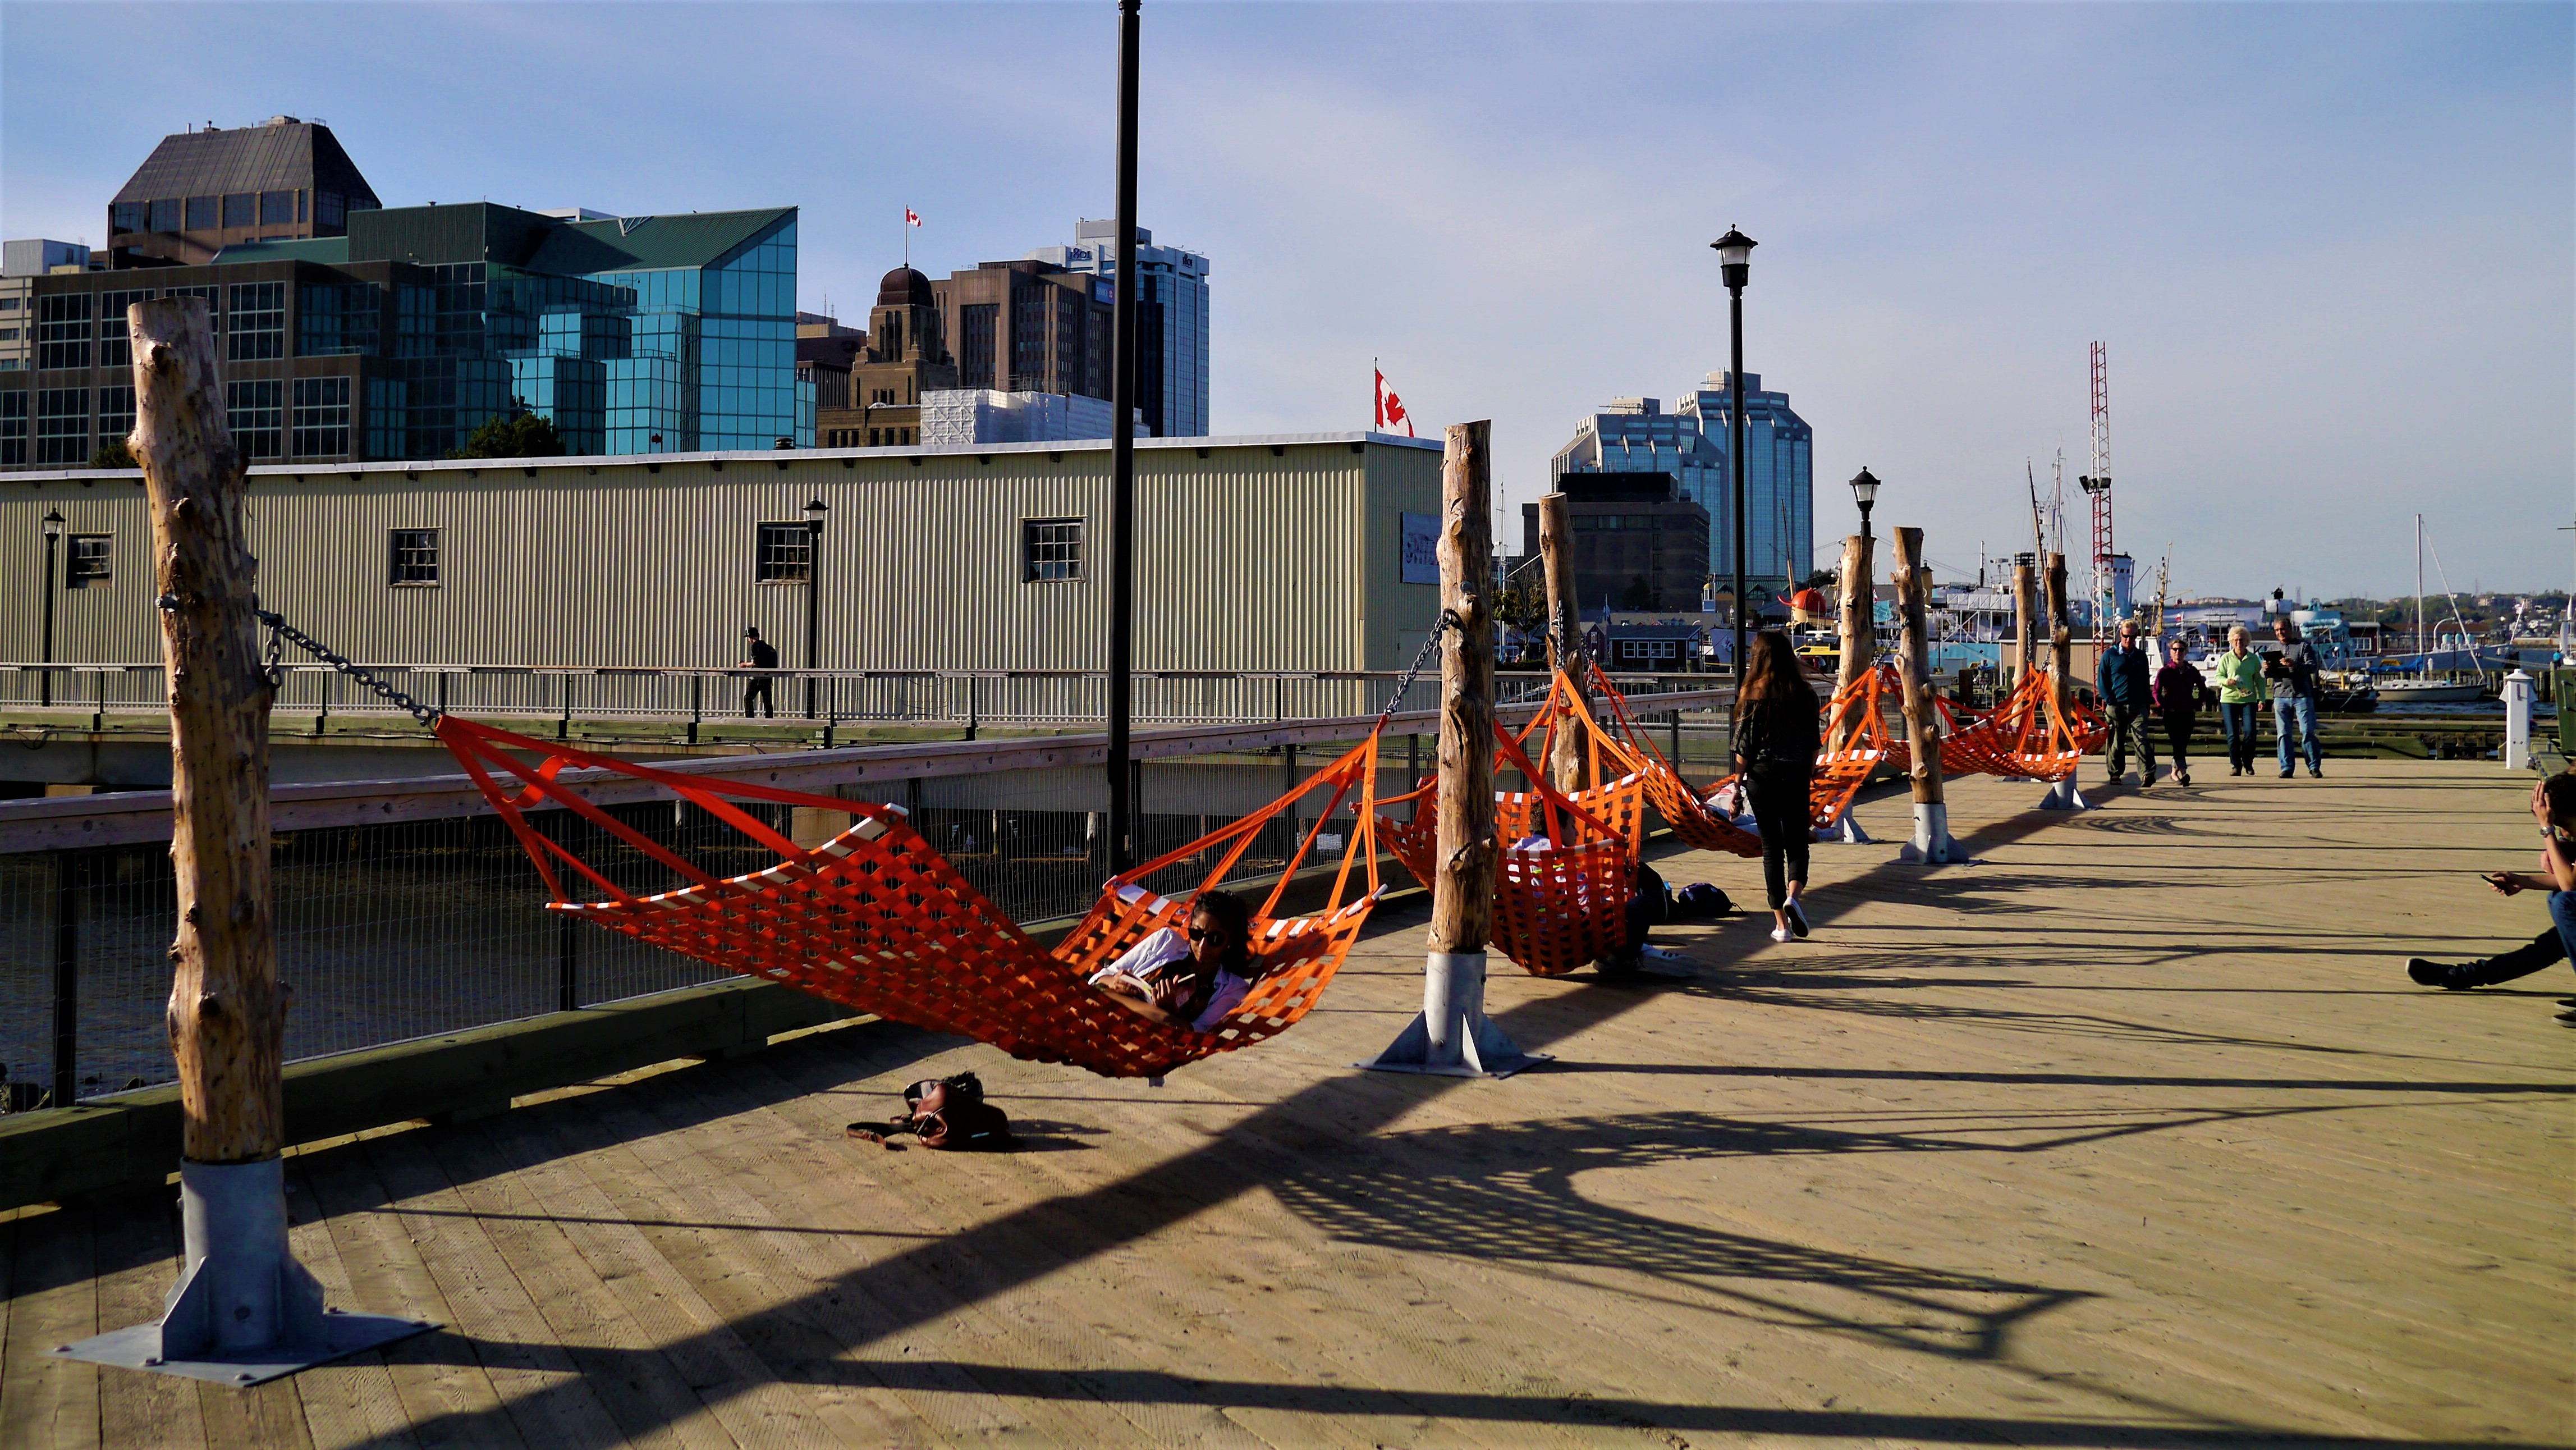 Halifax harbourfront hamacs centre-ville que faire blog voyage nouvelle-ecosse canada